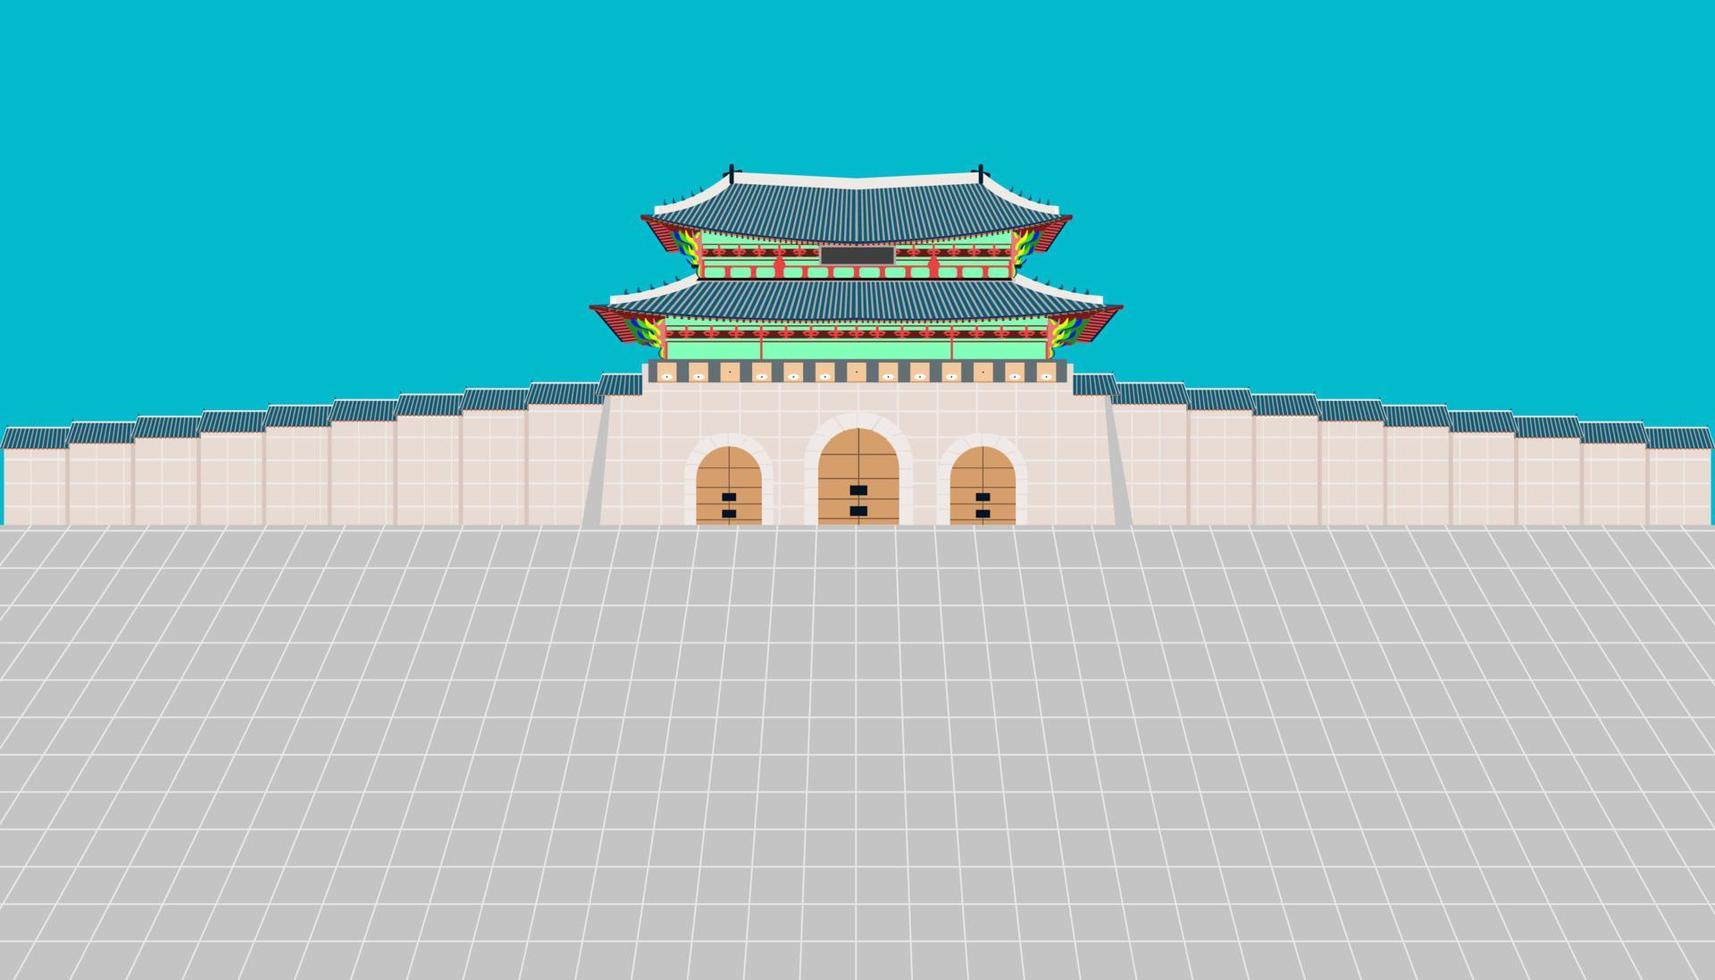 cancello gwanghwamun e lungo muro e ampio cortile al palazzo gyeongbokgung a seoul corea del sud. illustrazione vettoriale eps10